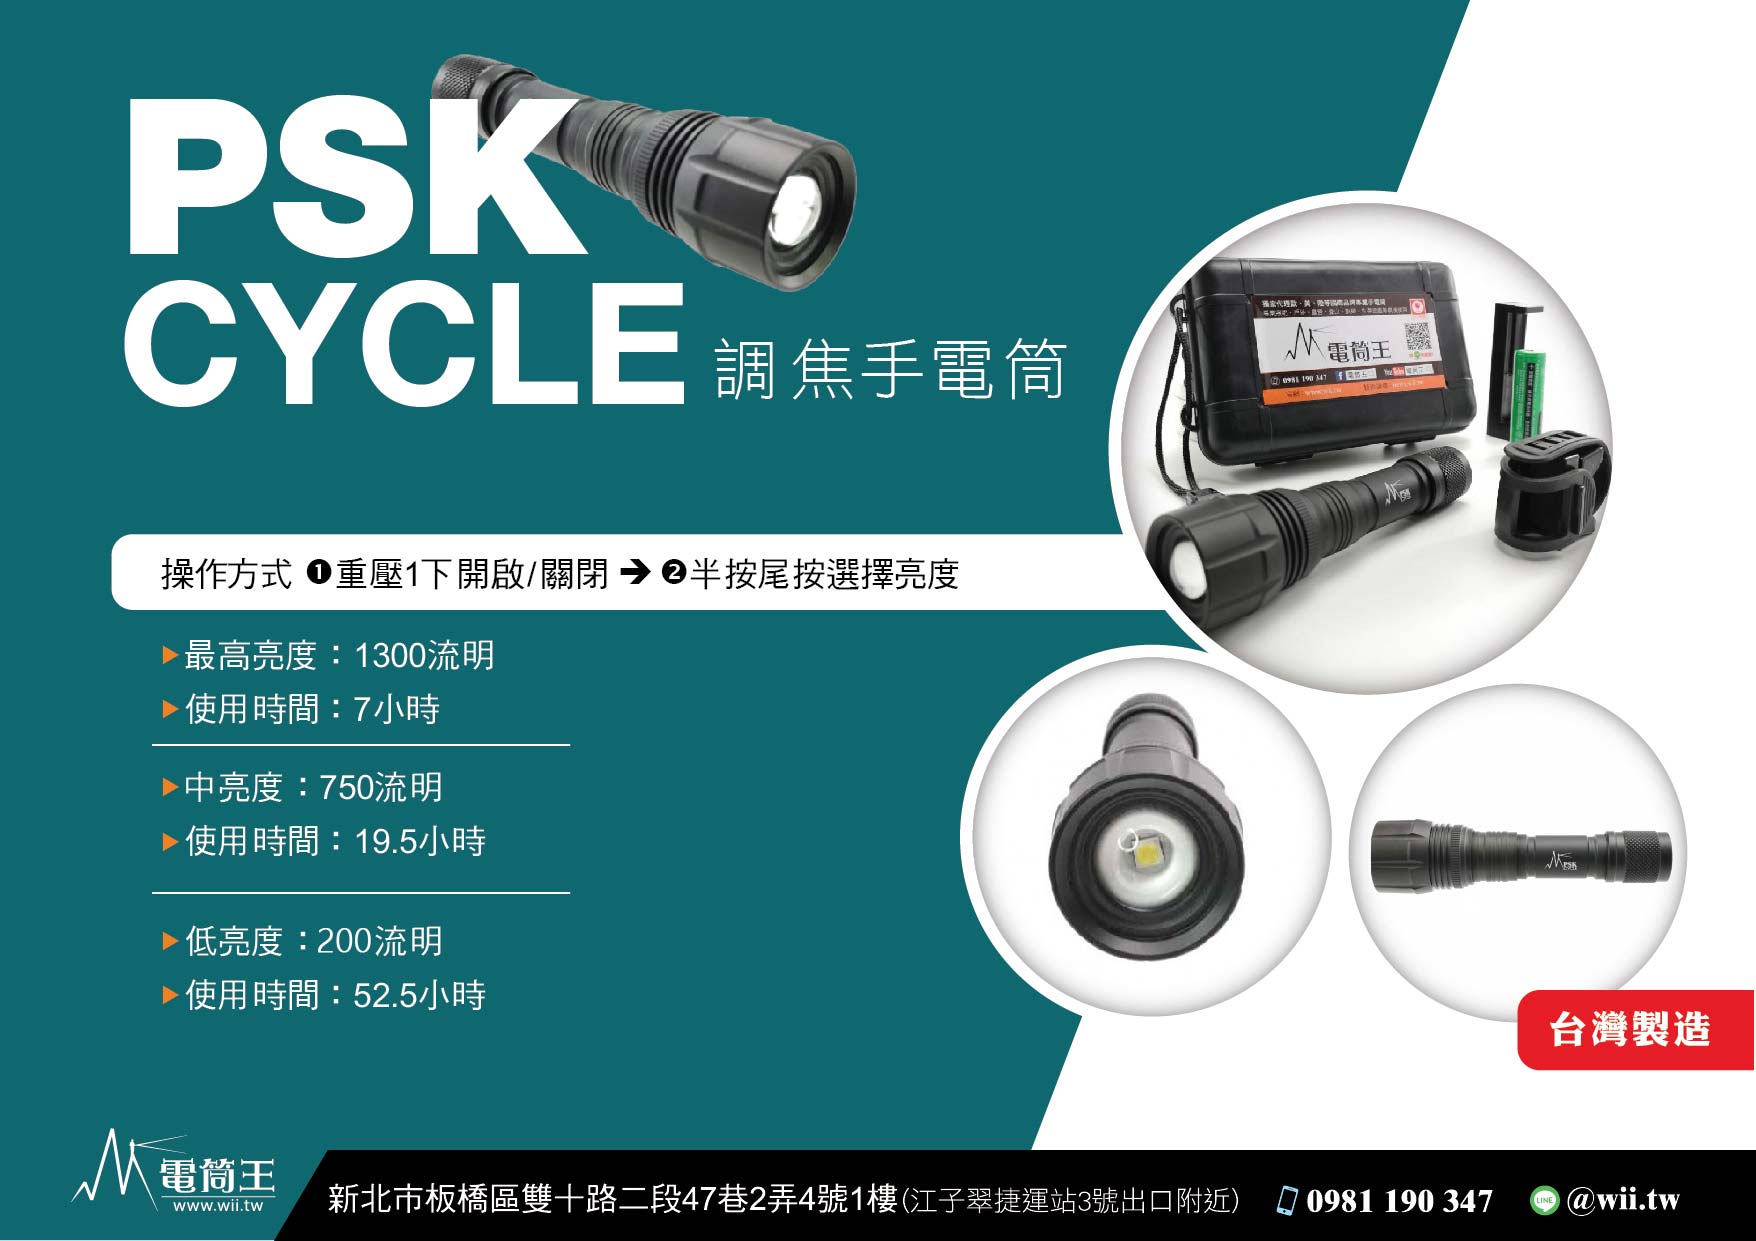 PSK CYCLE 調焦 1300流明 腳踏車燈 18650手電筒 三段亮度 套組含電池車夾